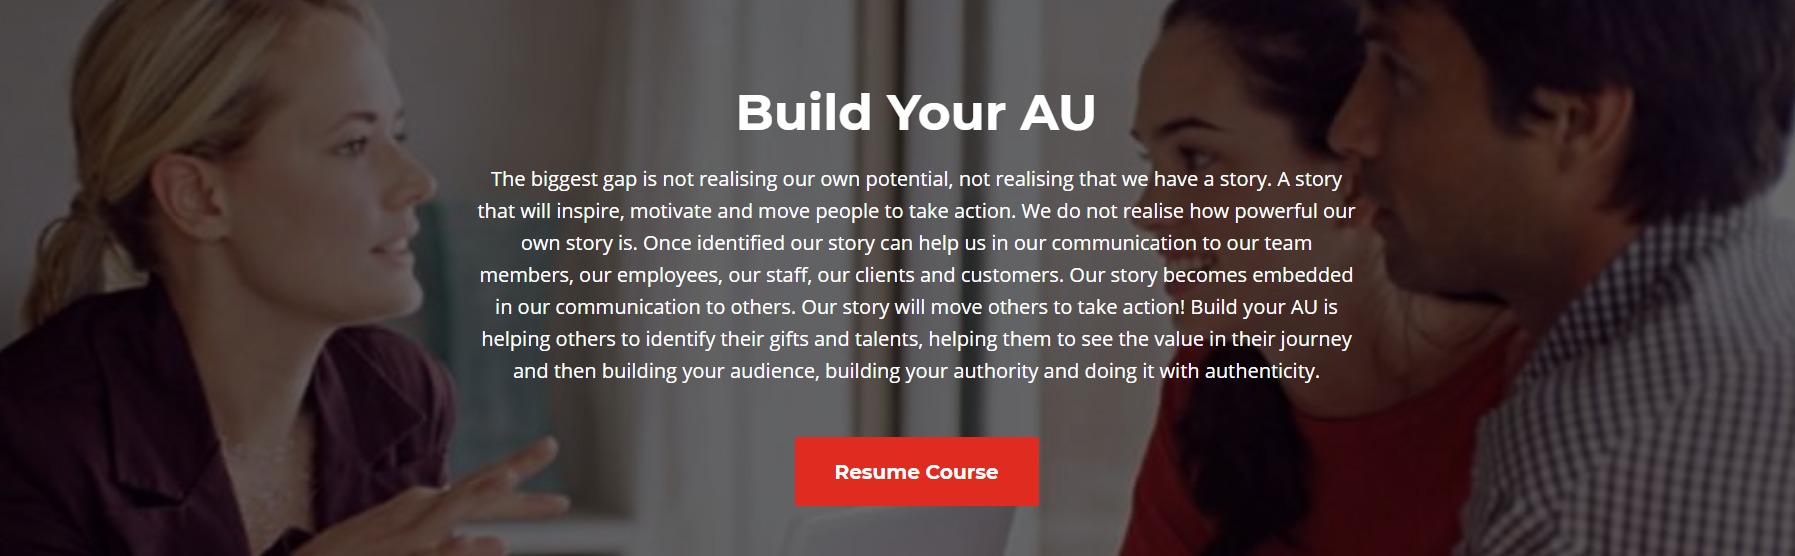 build your au training program